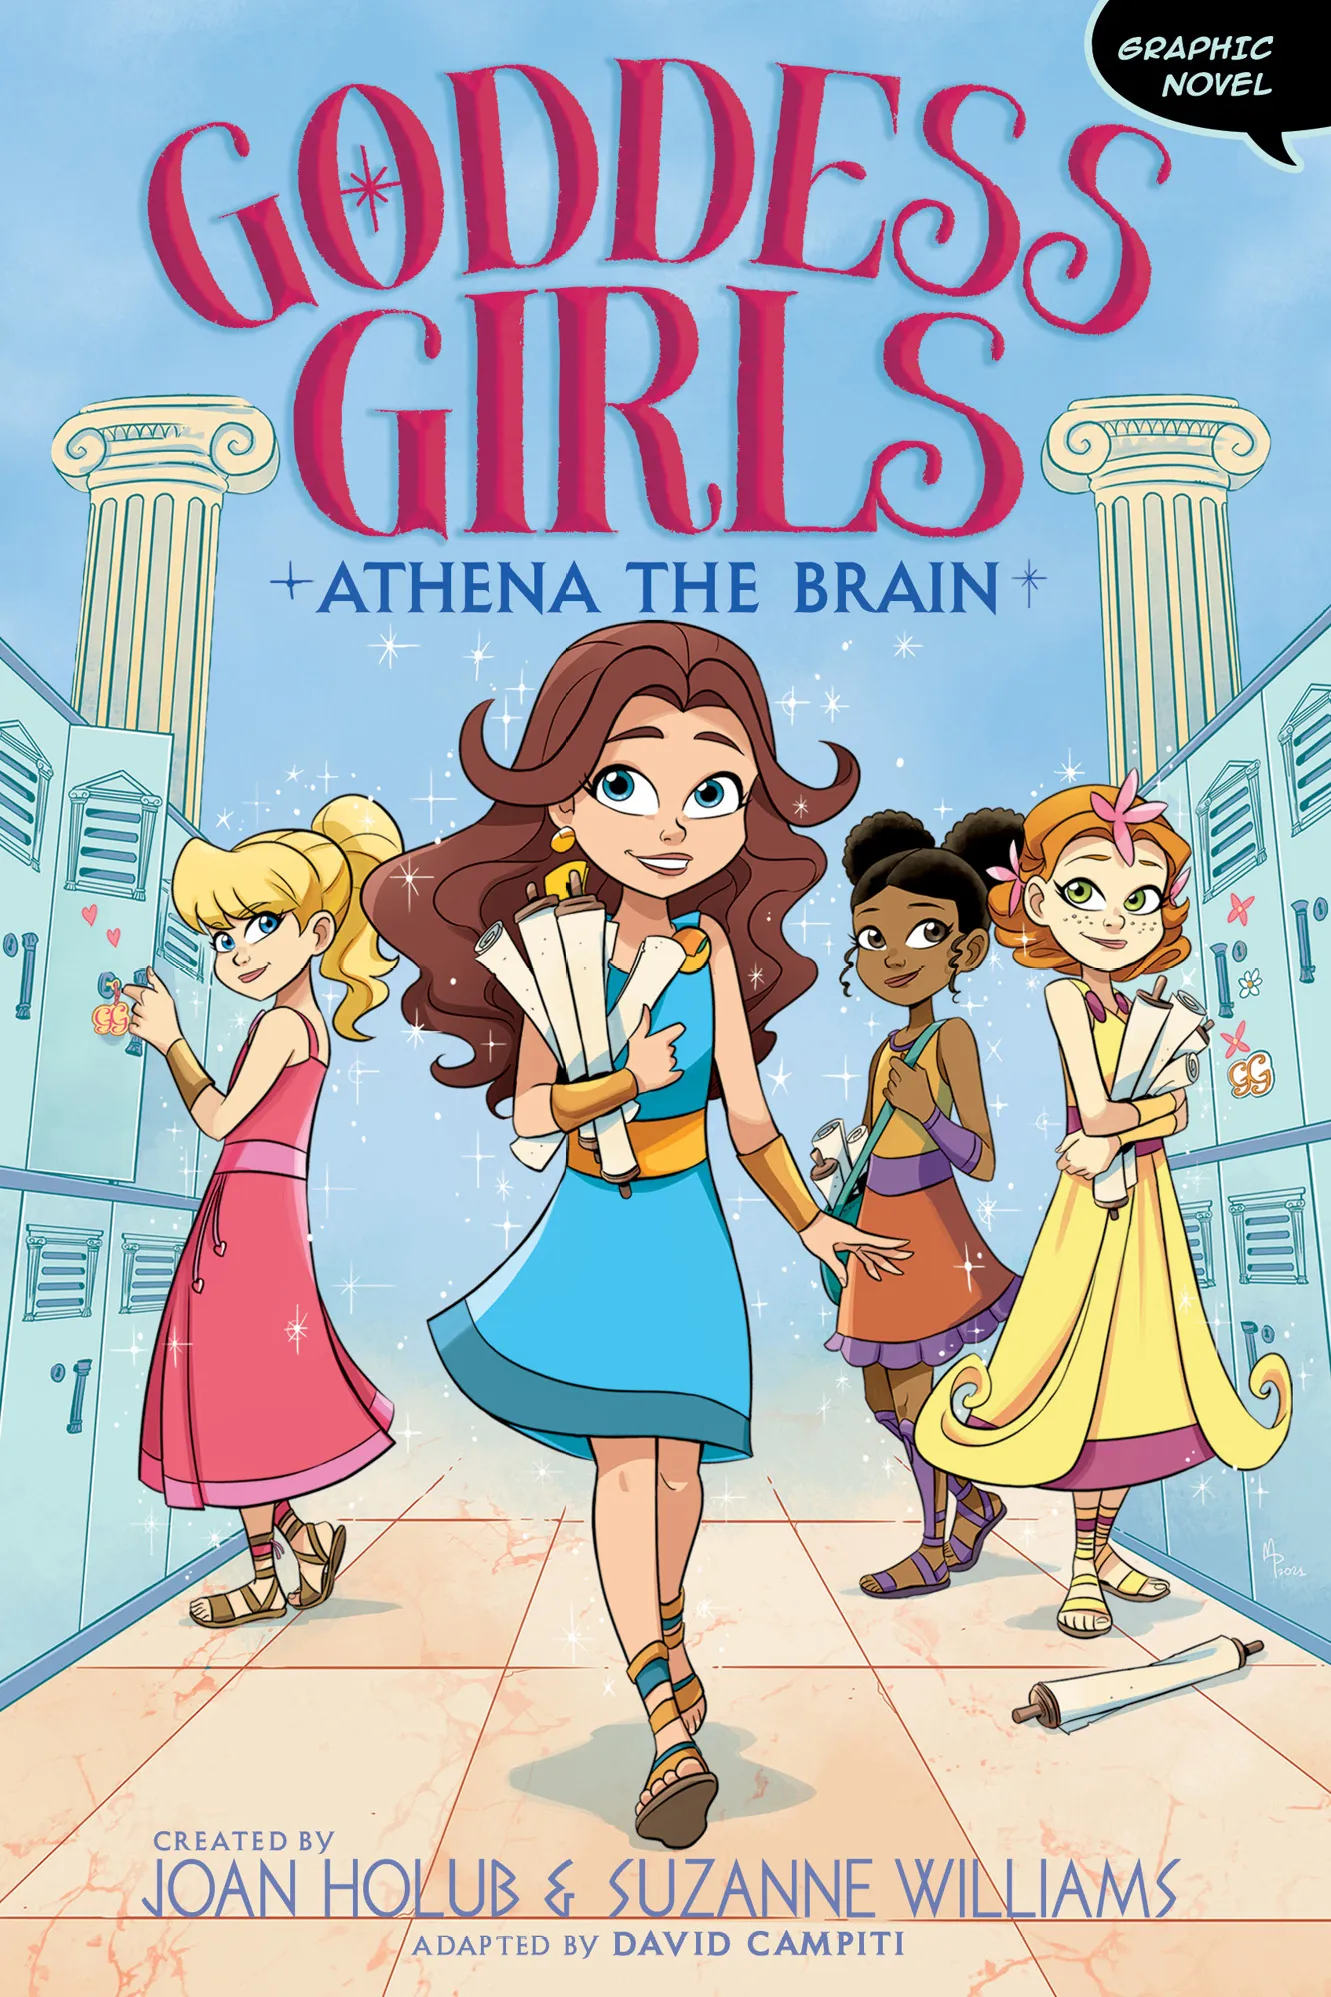 Athena the Brain: Graphic Novel (Goddess Girls Graphic Novels #1)